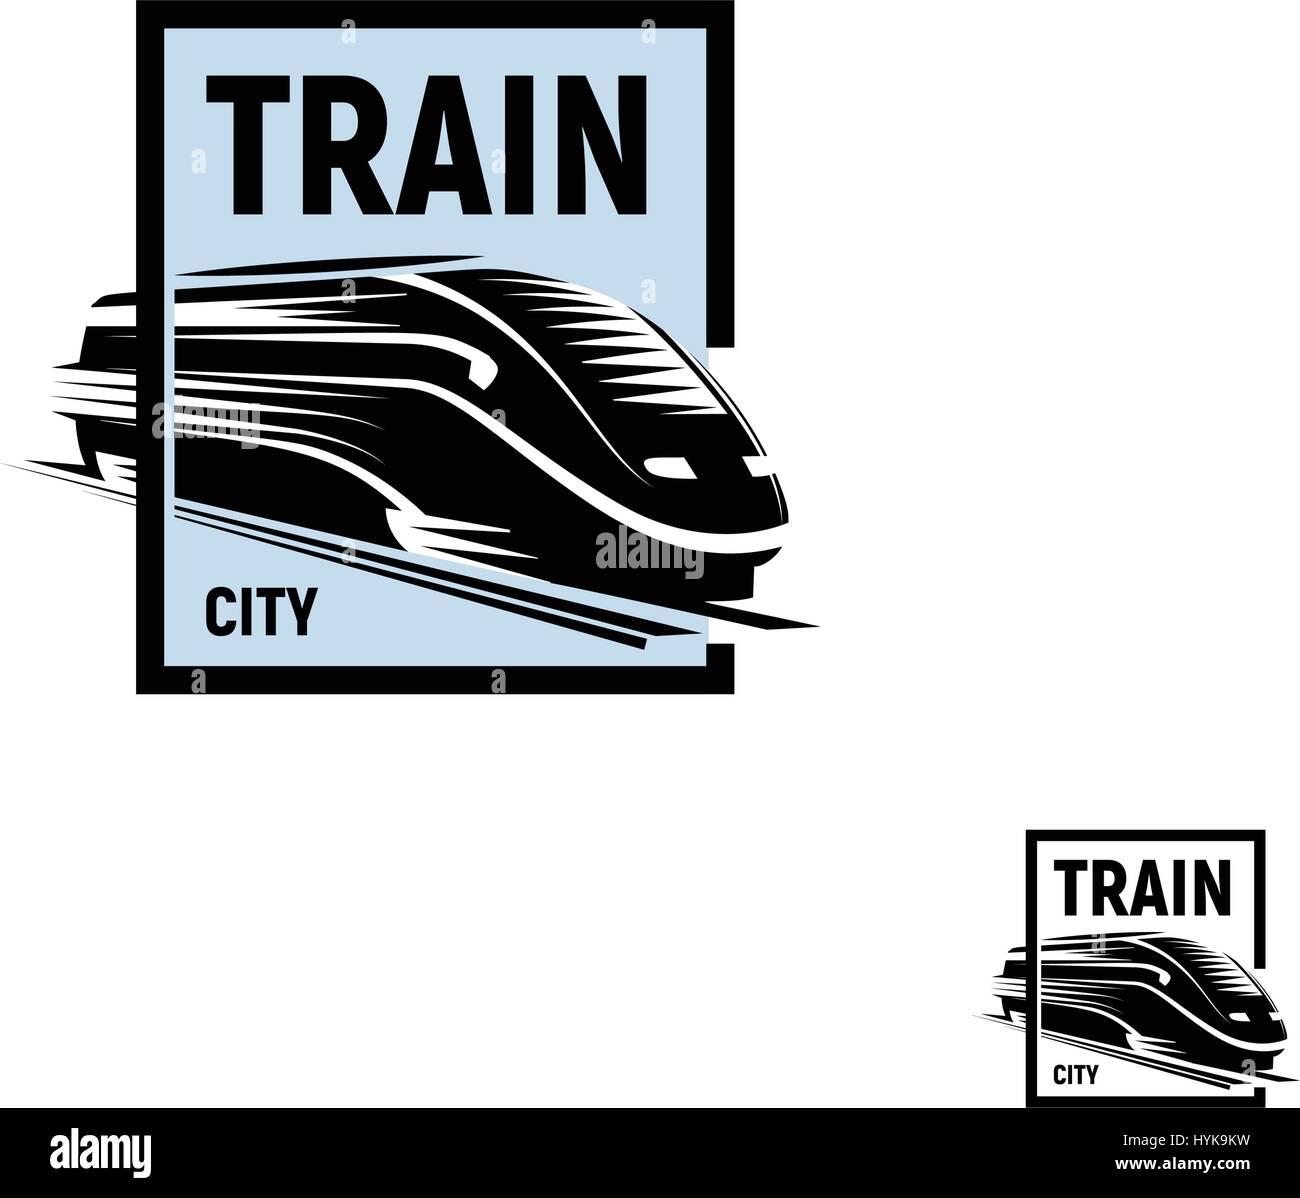 Abstract isolato di colore nero in treno in quadrato blu logo su sfondo bianco, monocromatico moderno trasporto ferroviario logotipo, railroad elemento in stile di incisione illustrazione vettoriale Illustrazione Vettoriale